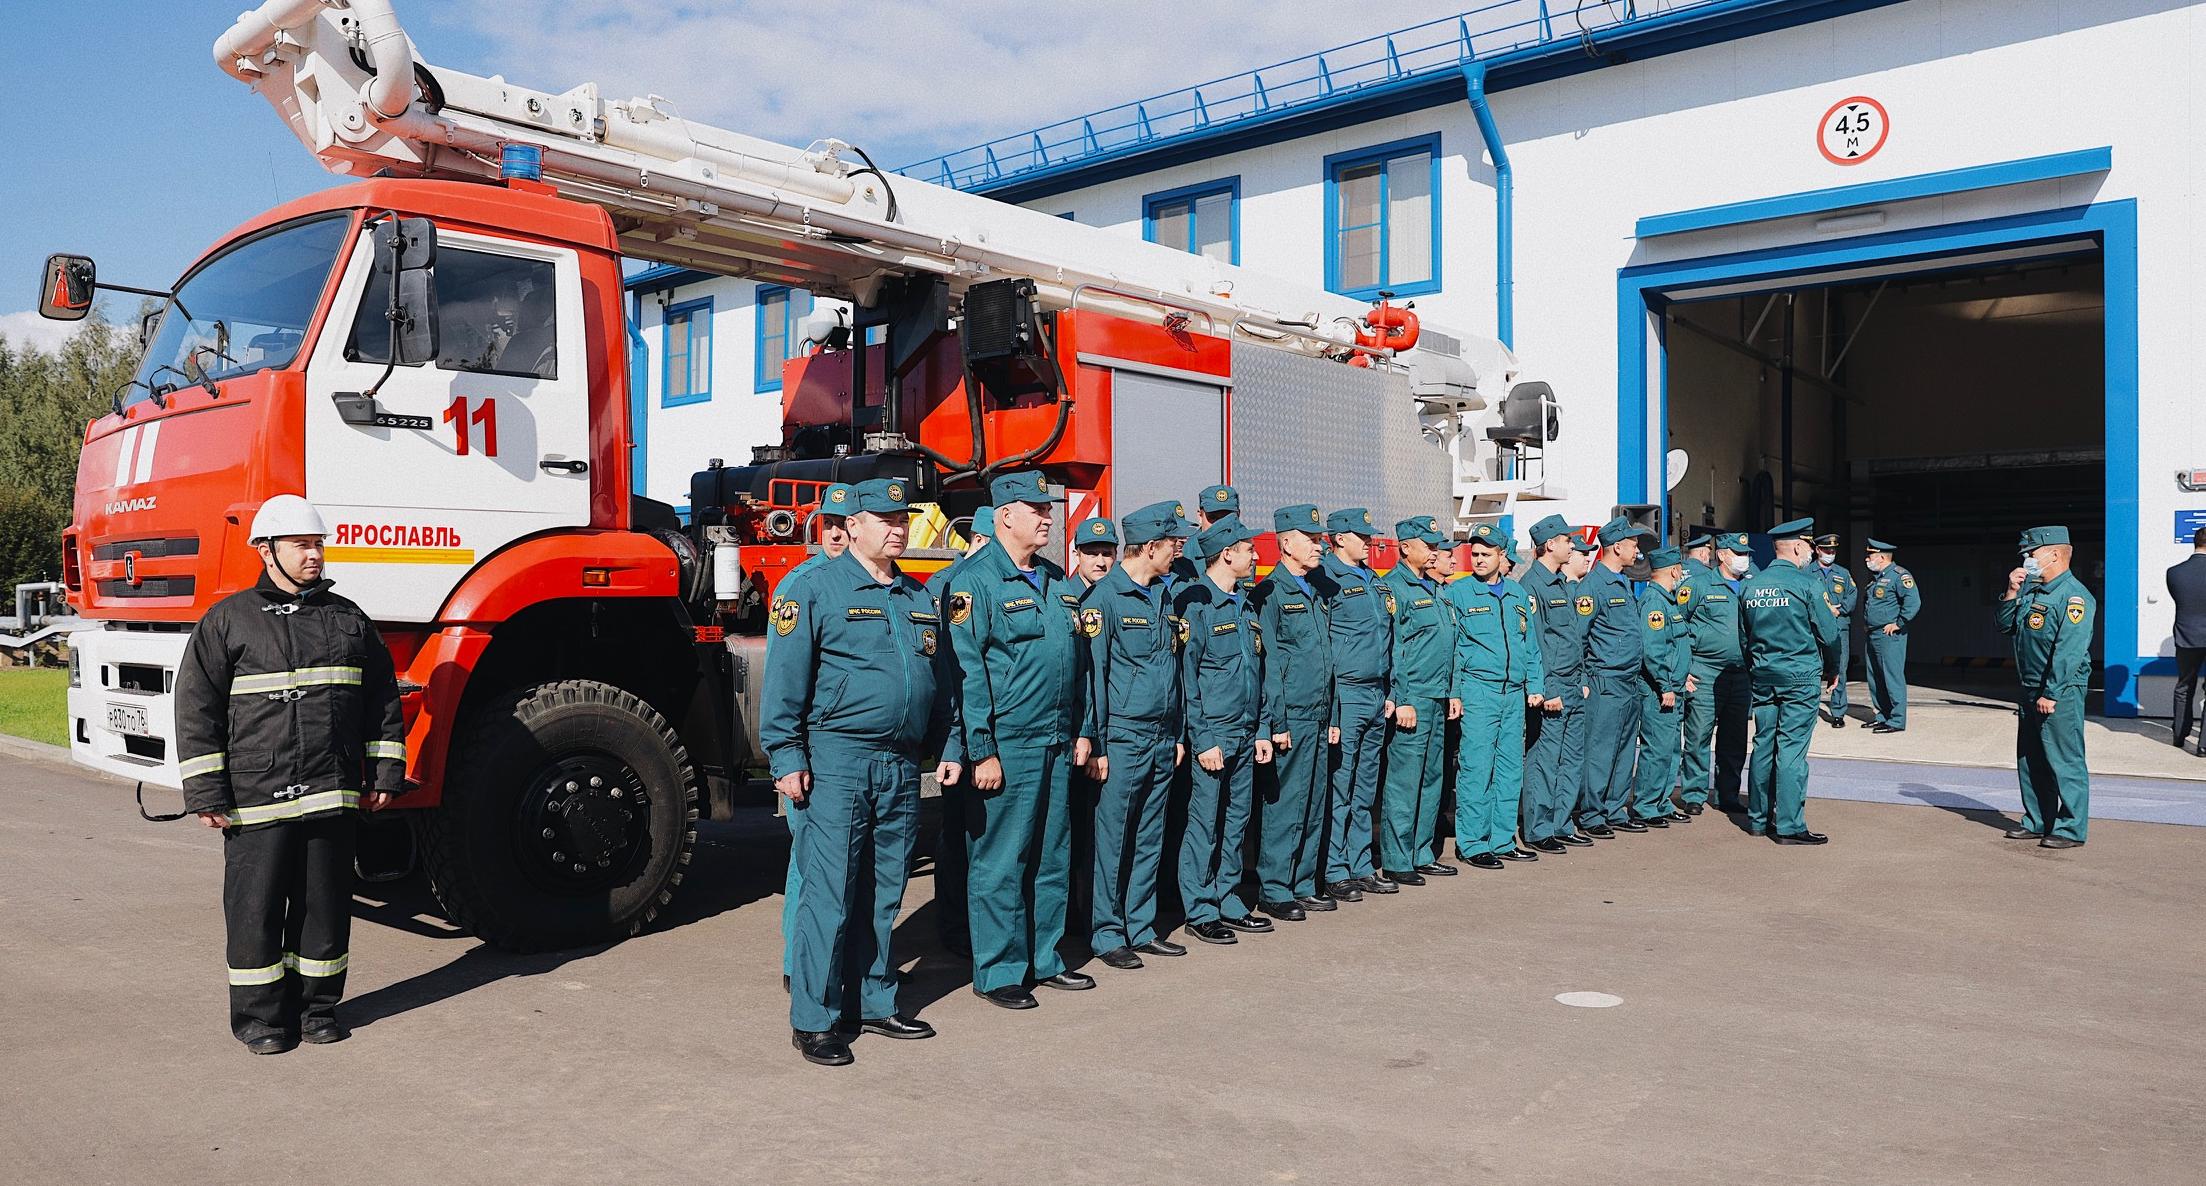 Новое депо в Ярославской области для пожарных в пользование от ООО «Транснефть – Балтика»